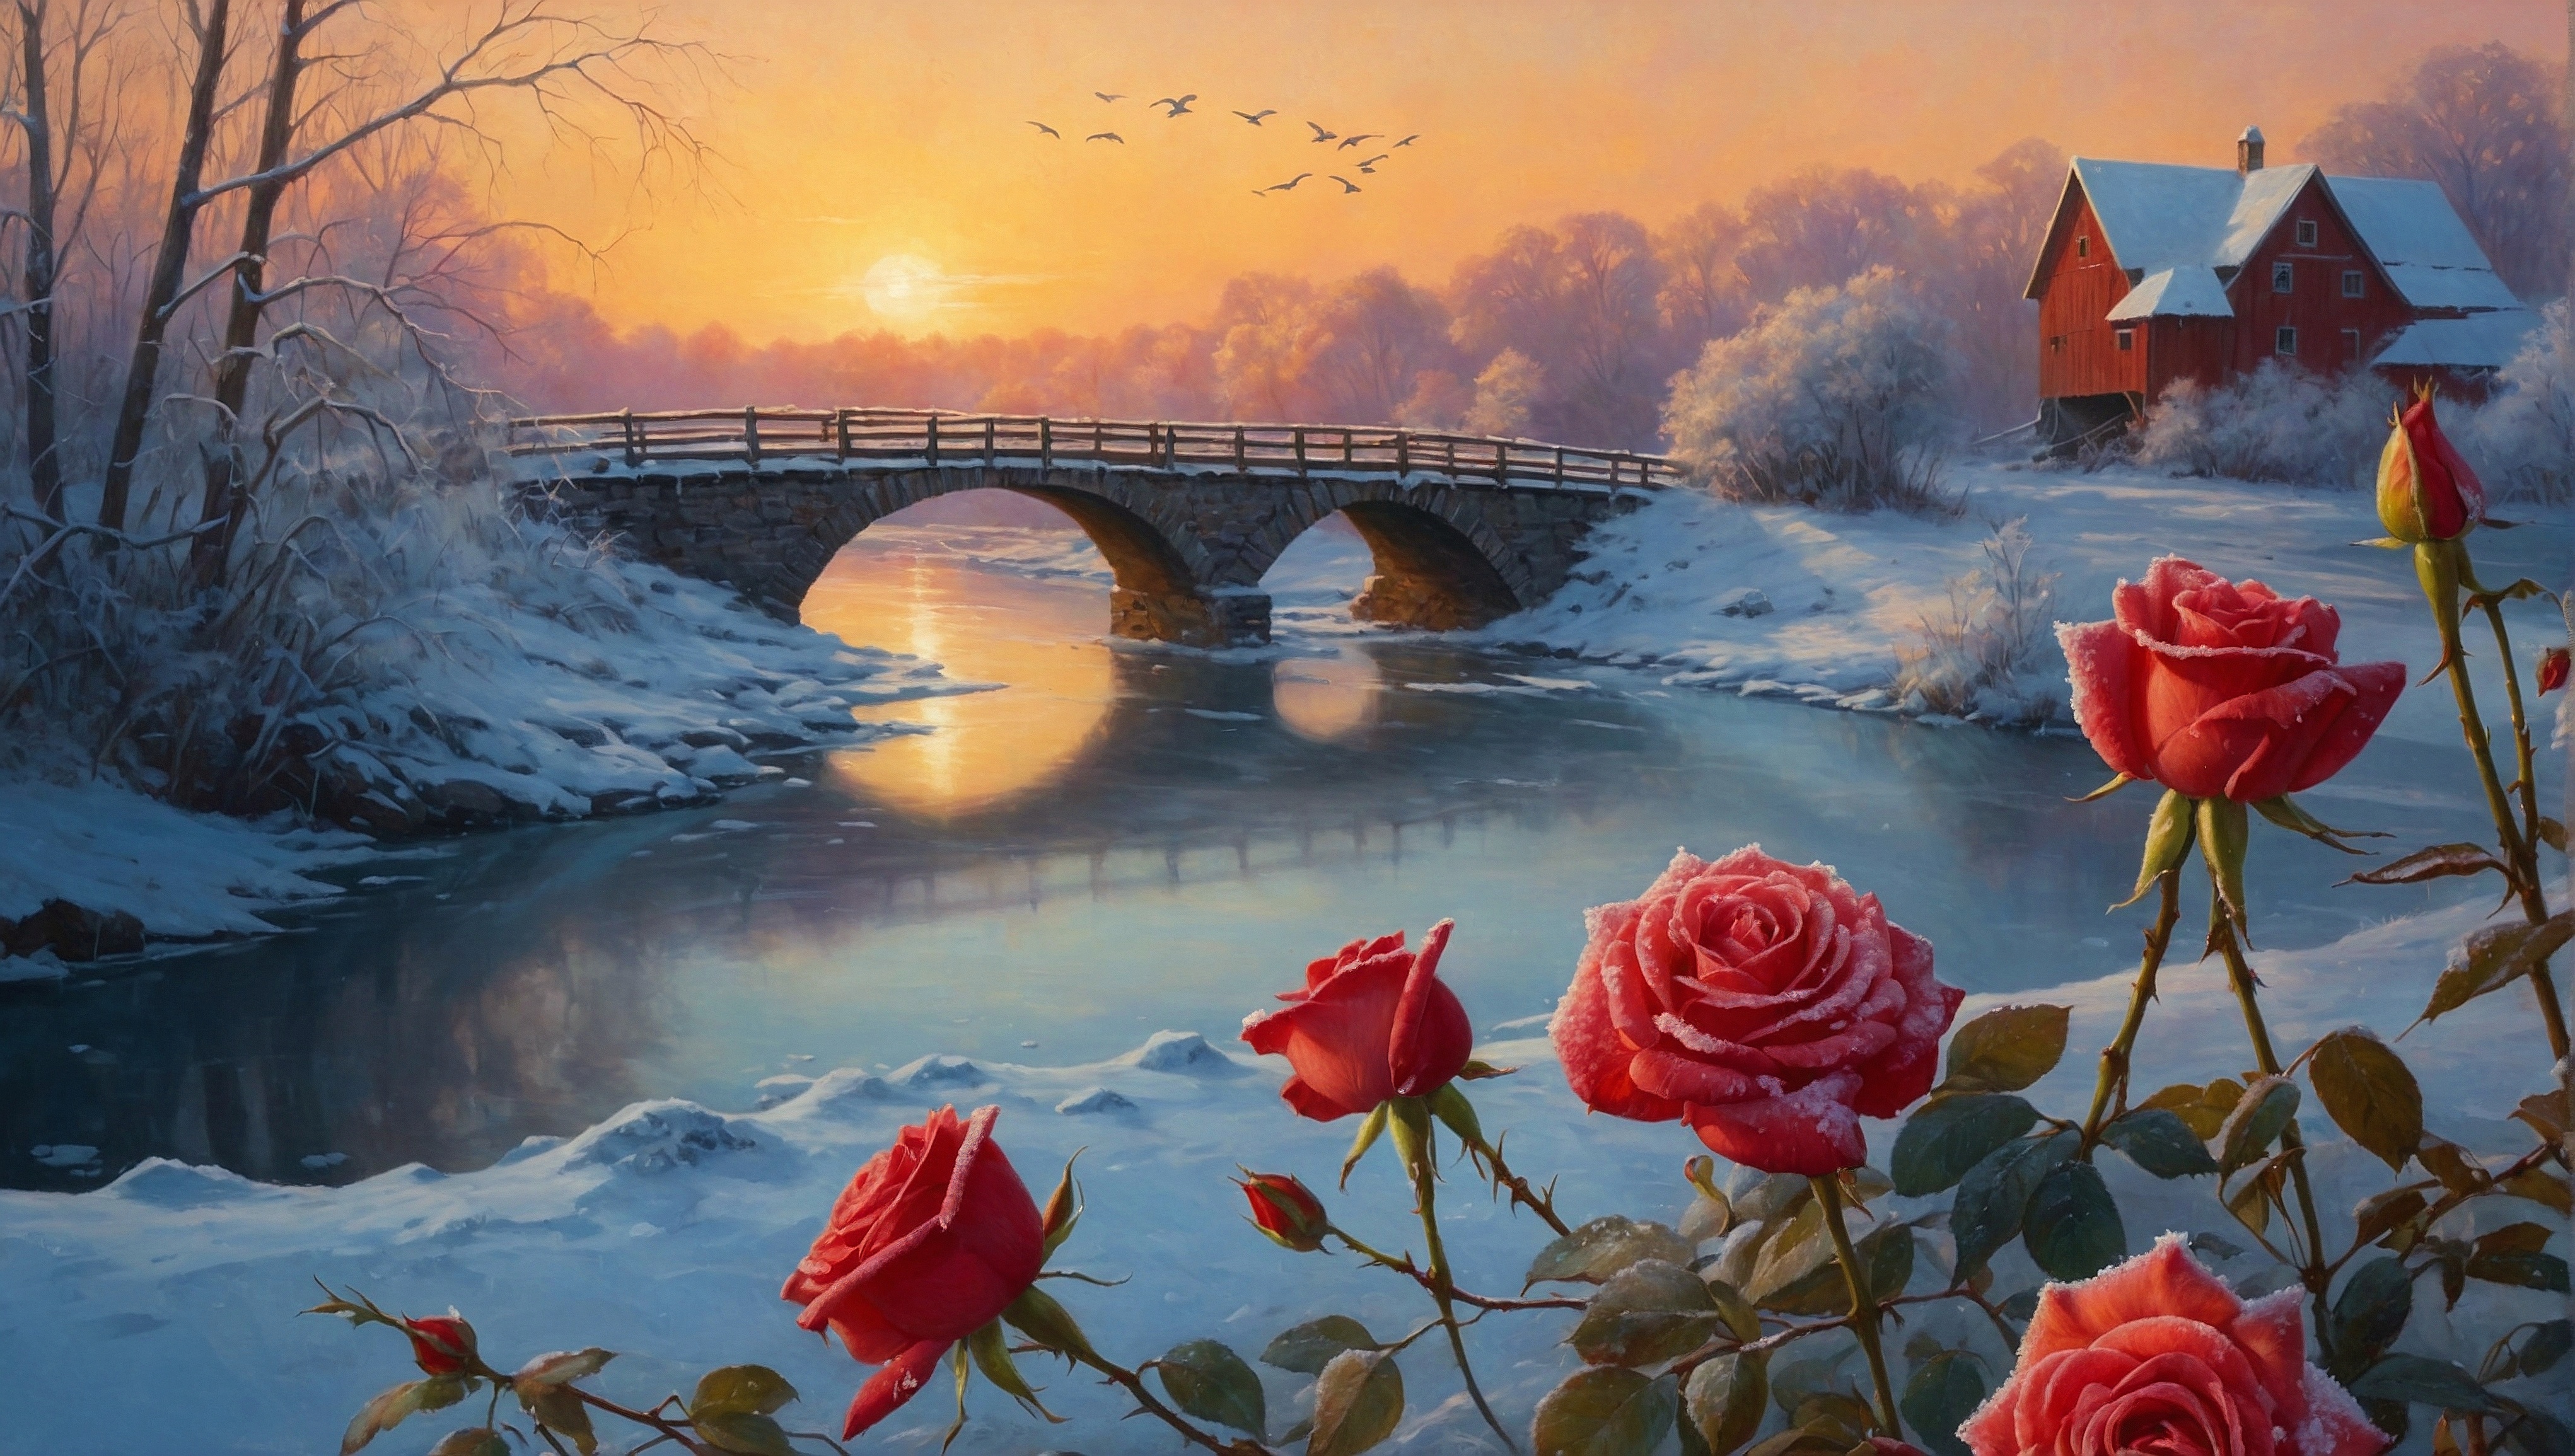 Бесплатное фото Картина с изображением красивой сцены с закатом, розами и мостом